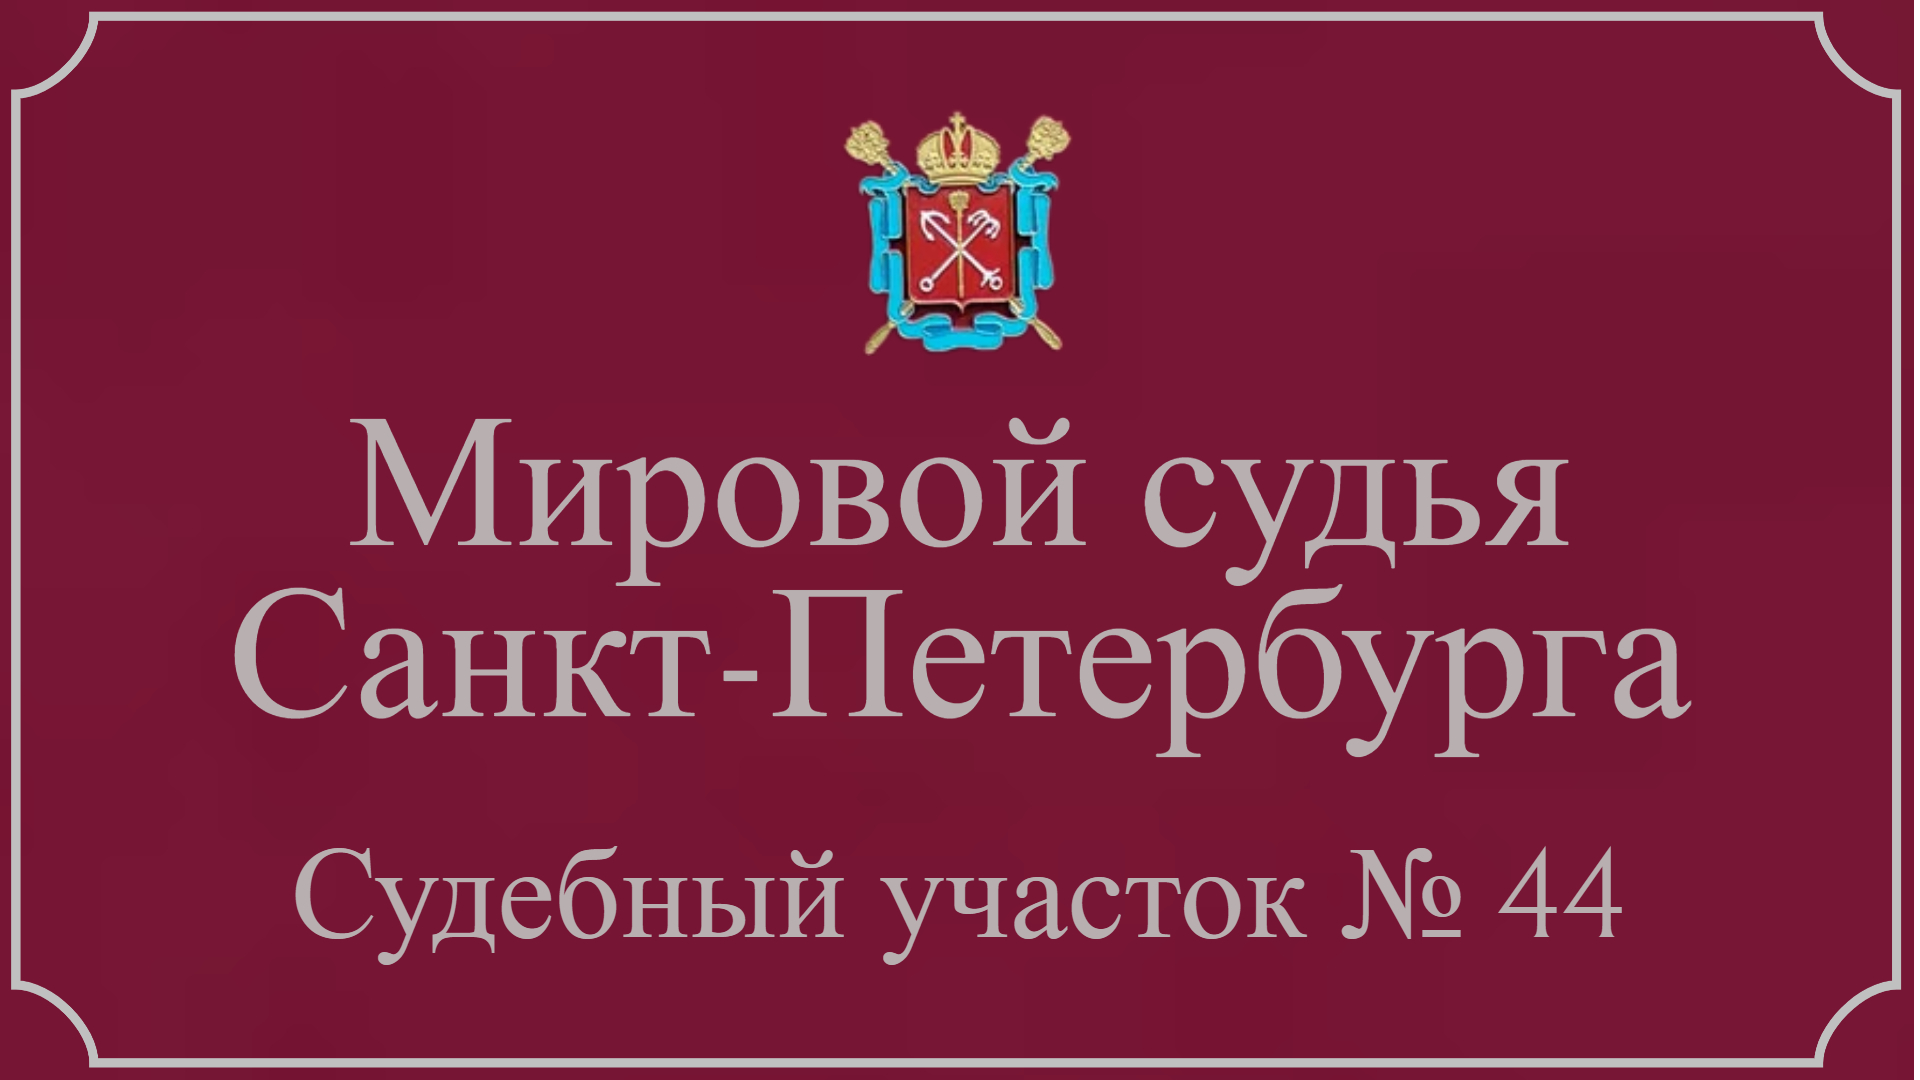 Информация по 44 судебному участку в Санкт-Петербурге.